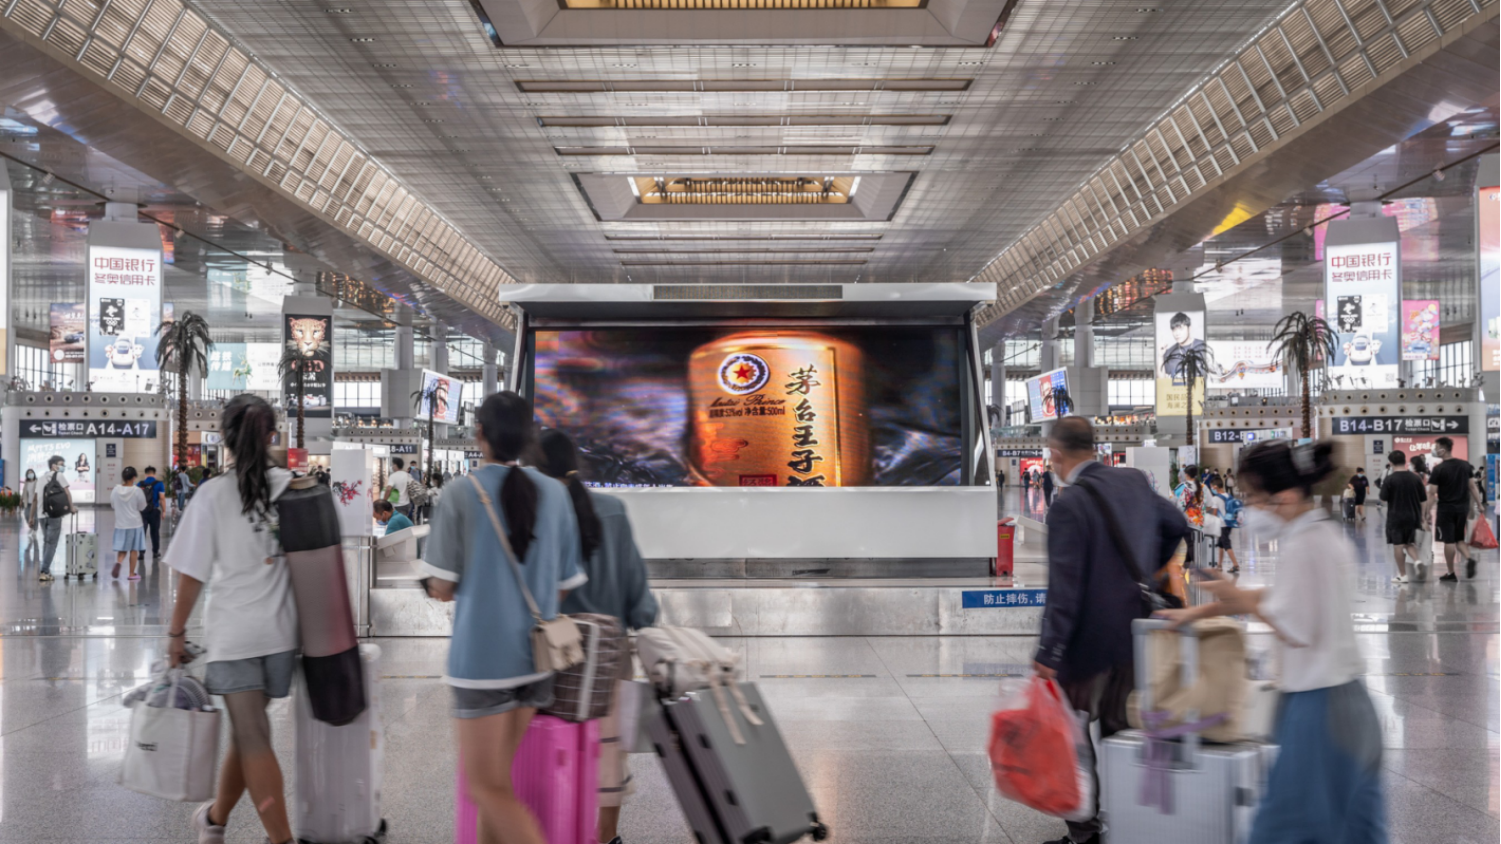 江苏南京南站出发层候车大厅幻影成像系统火车高铁媒体LED屏